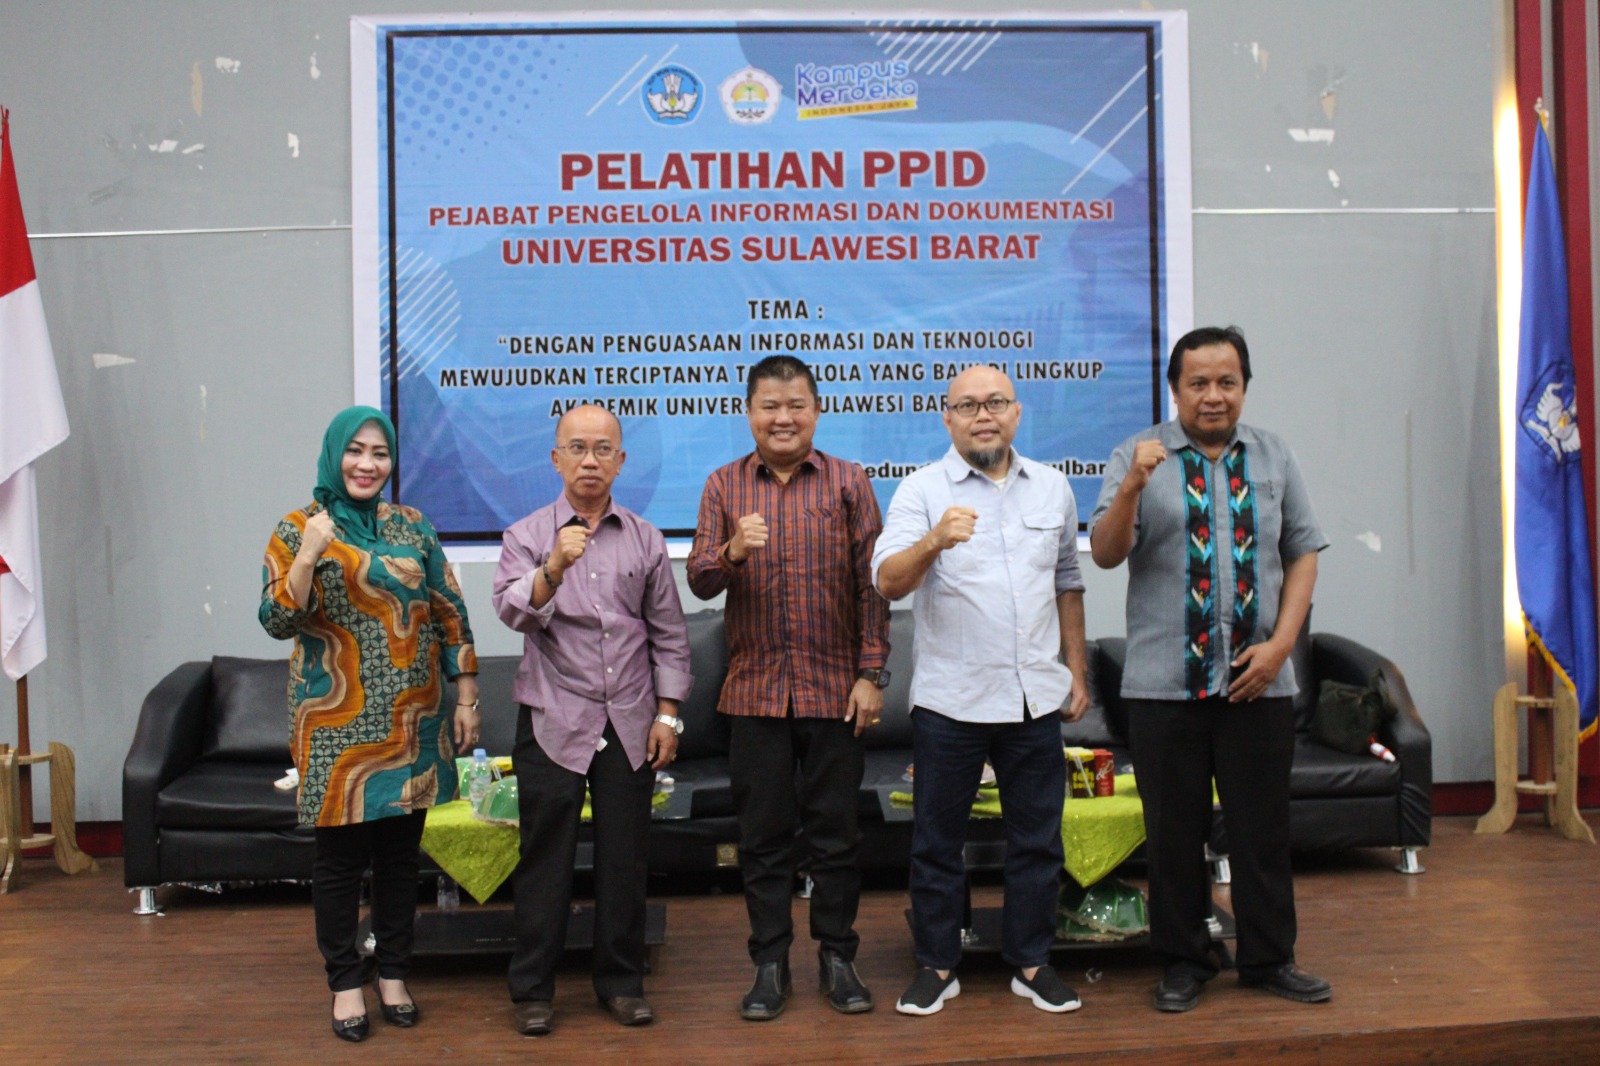 Pelatihan PPID lingkup Universitas Sulawesi Barat